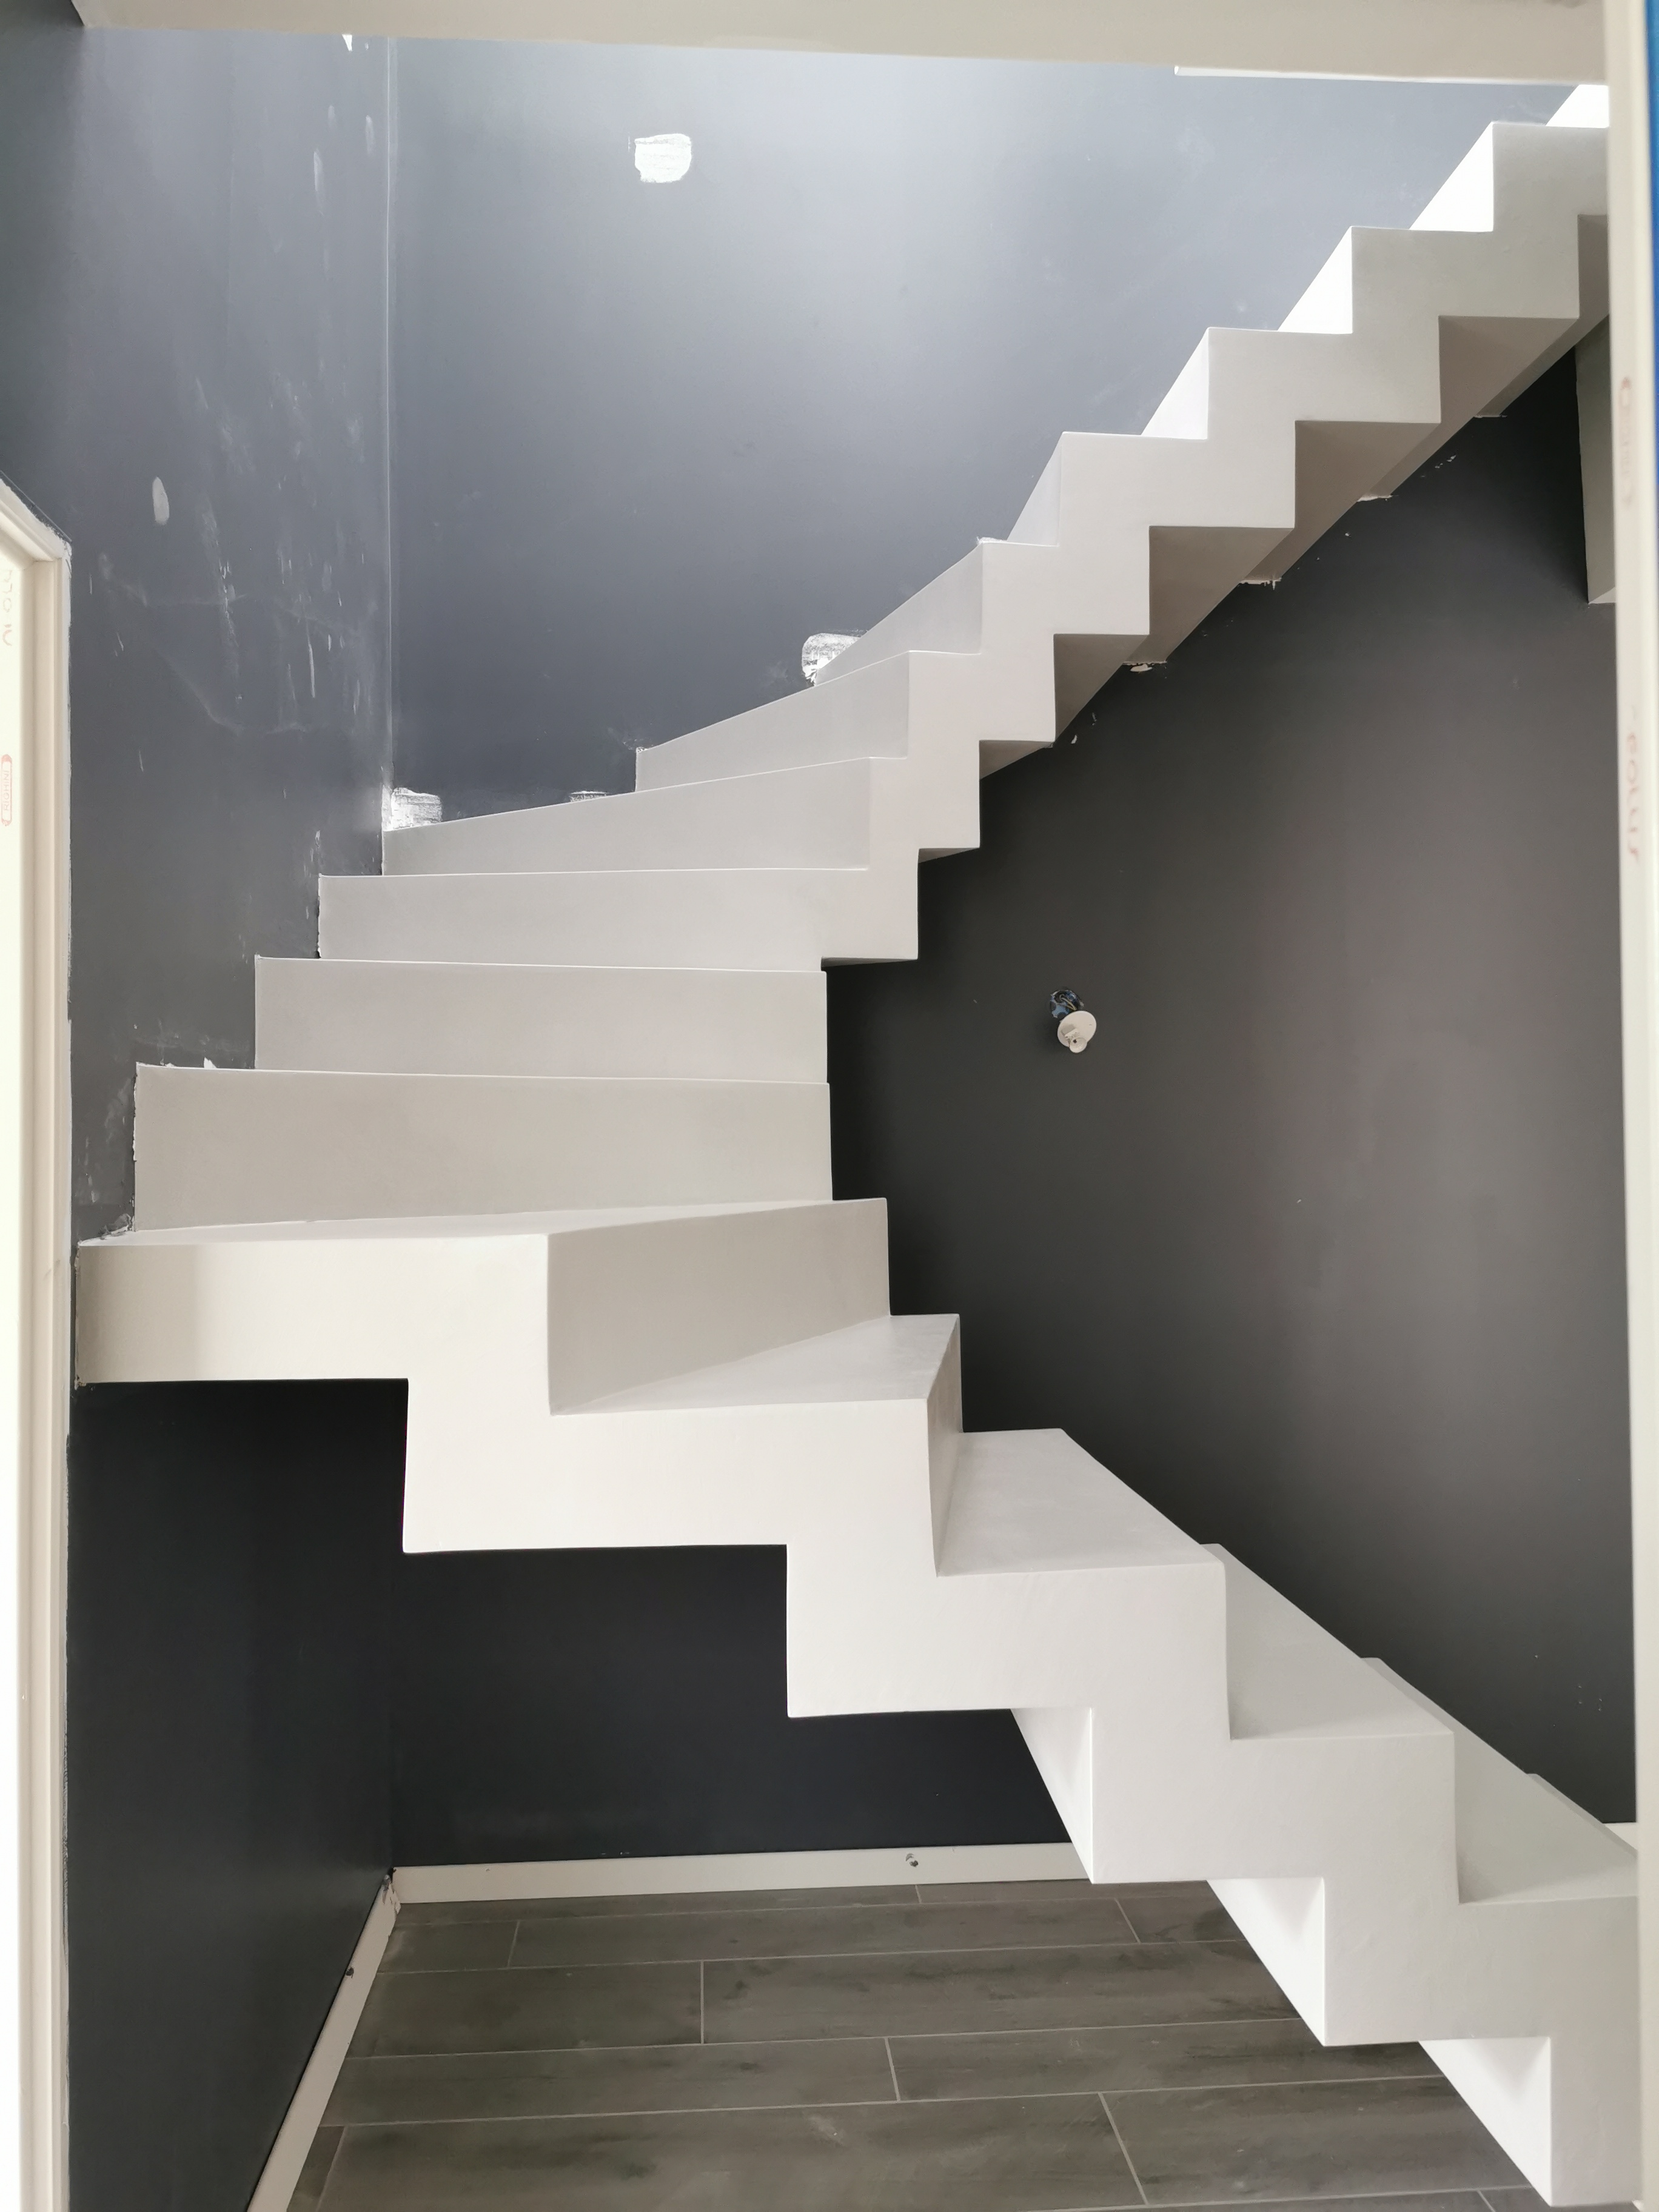 remarquable escalier crémaillère contemporain en béton ciré vernis soyeux couleur gris cendré Gradignan proche de Bordeaux en Aquitaine pour un particulier